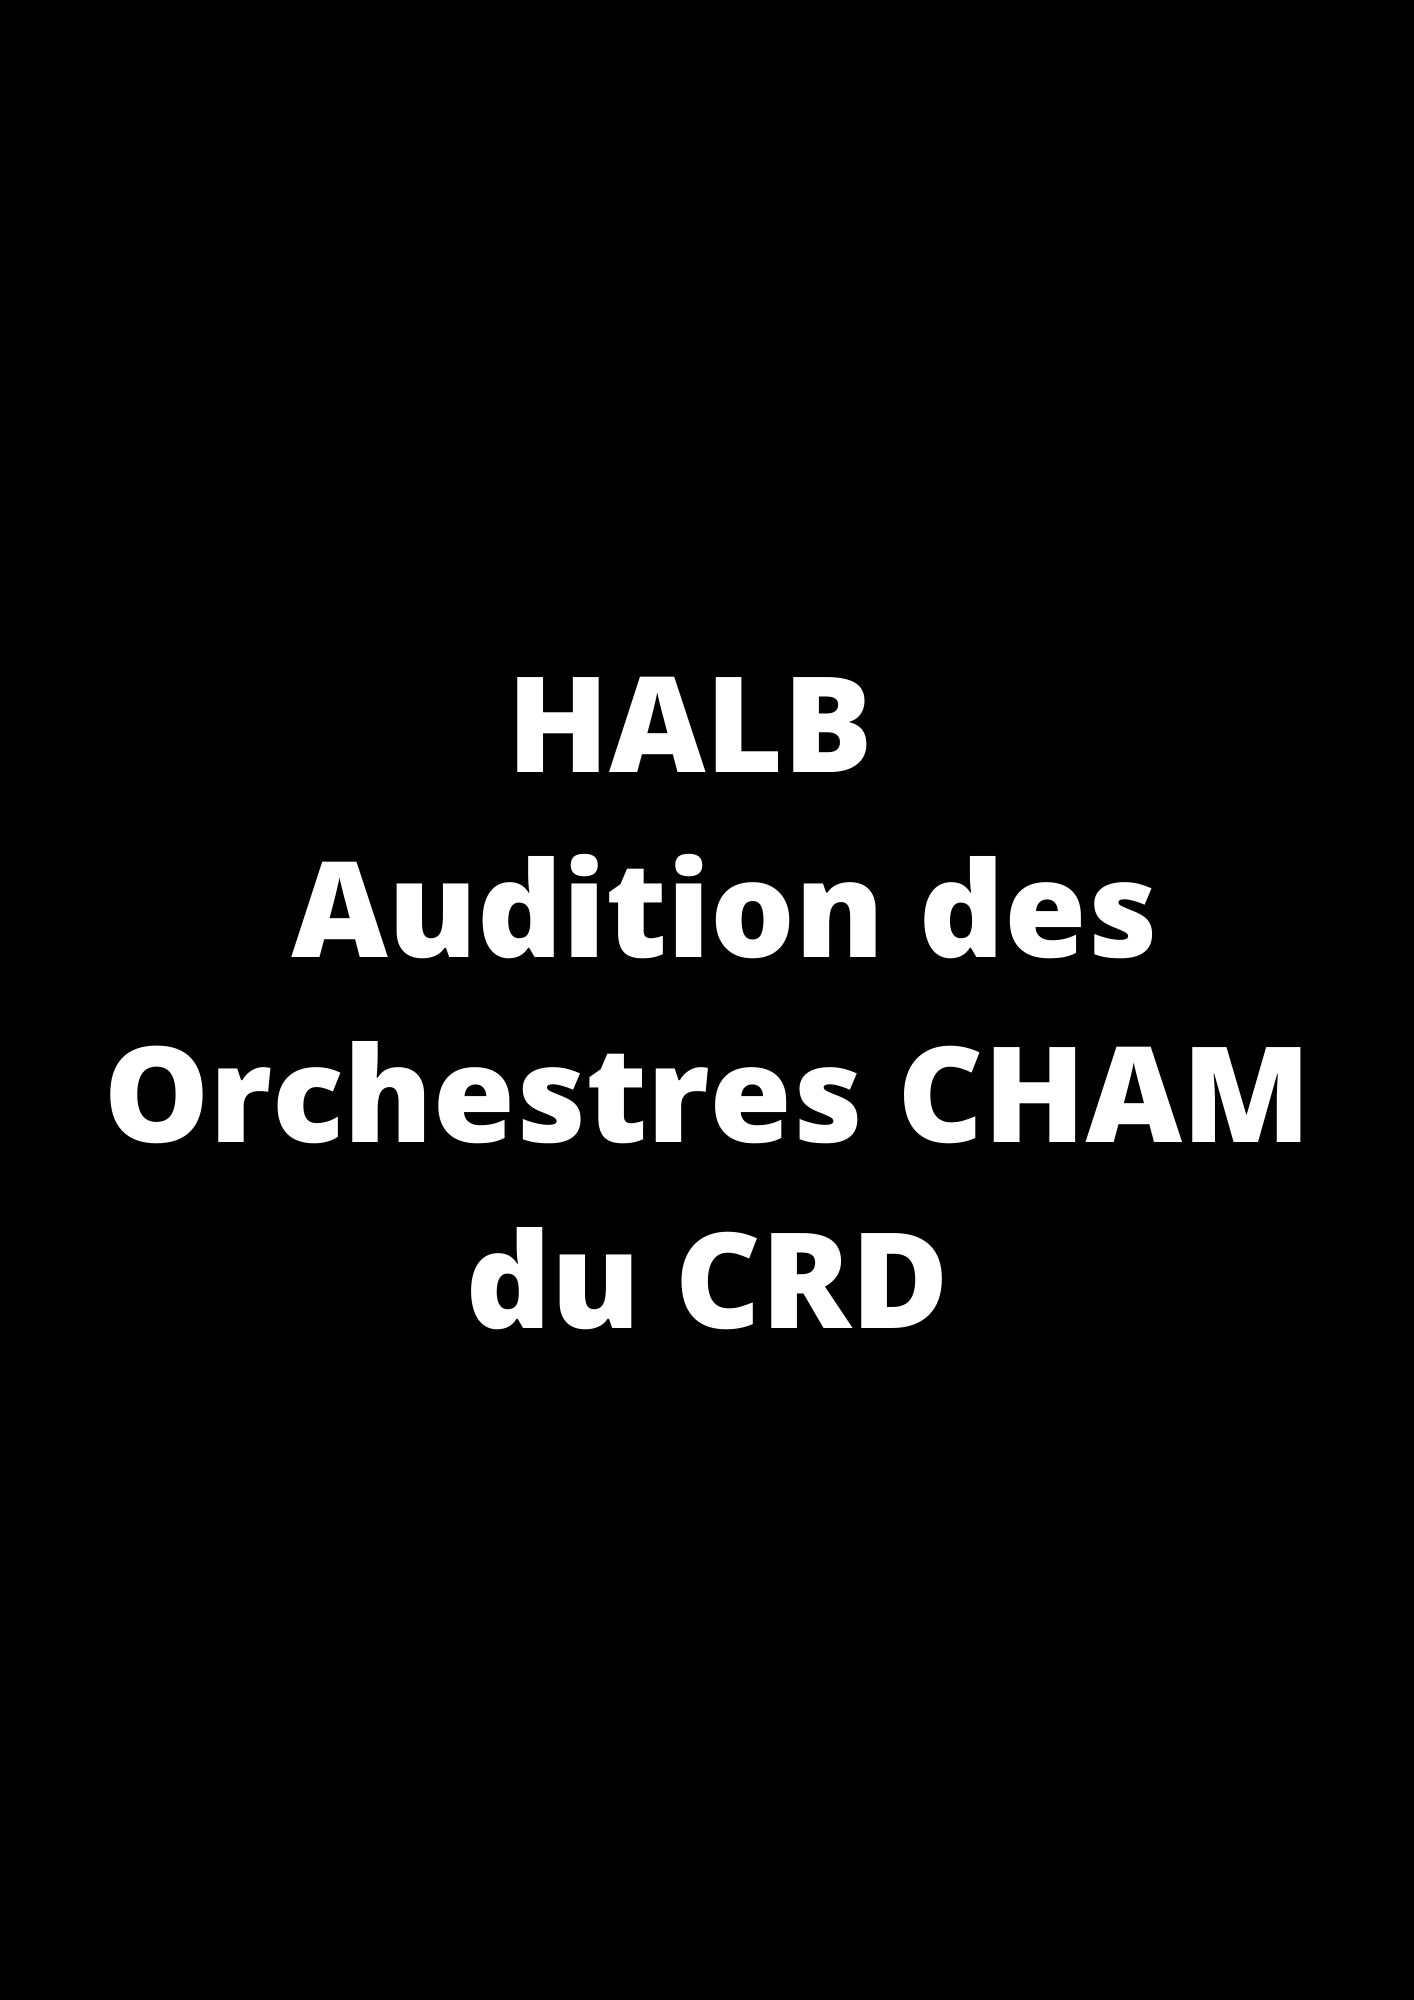 HALB - Audition des Orchestres CHAM du CRD